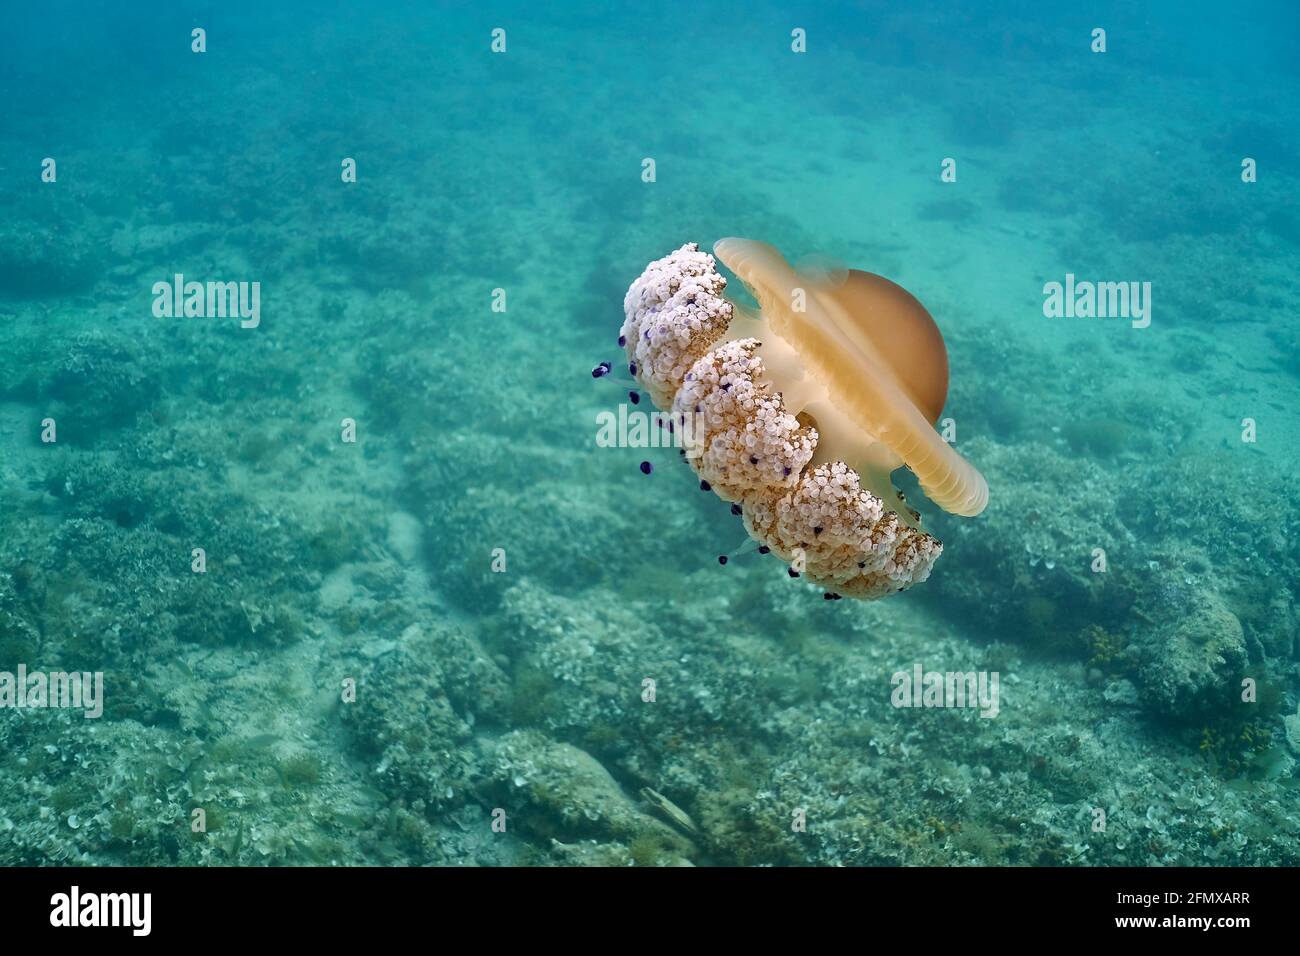 Cotylorhiza tuberculata o medusas fritas flotando en aguas poco profundas. El fondo del mar se puede ver también. Foto de stock